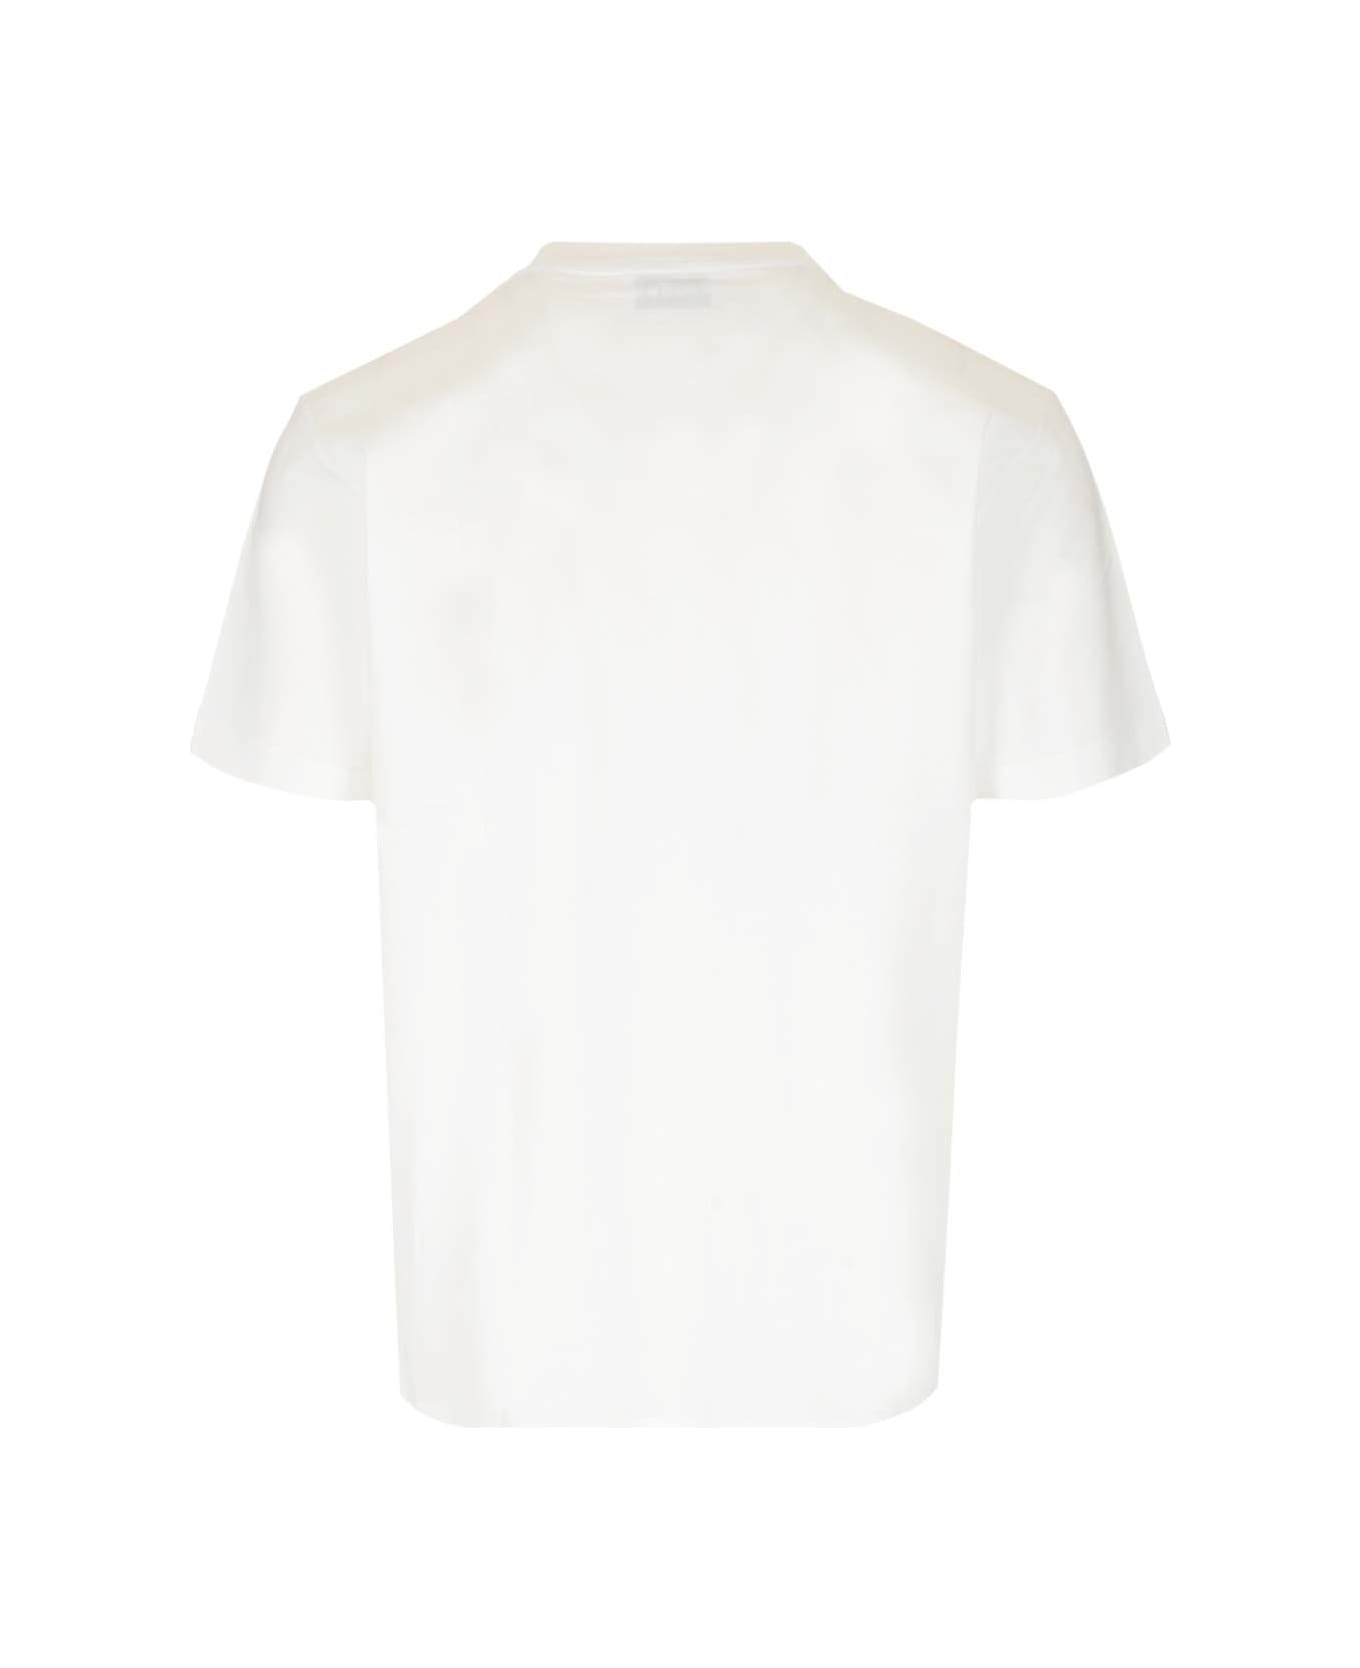 Études Cotton T-shirt - Bianco